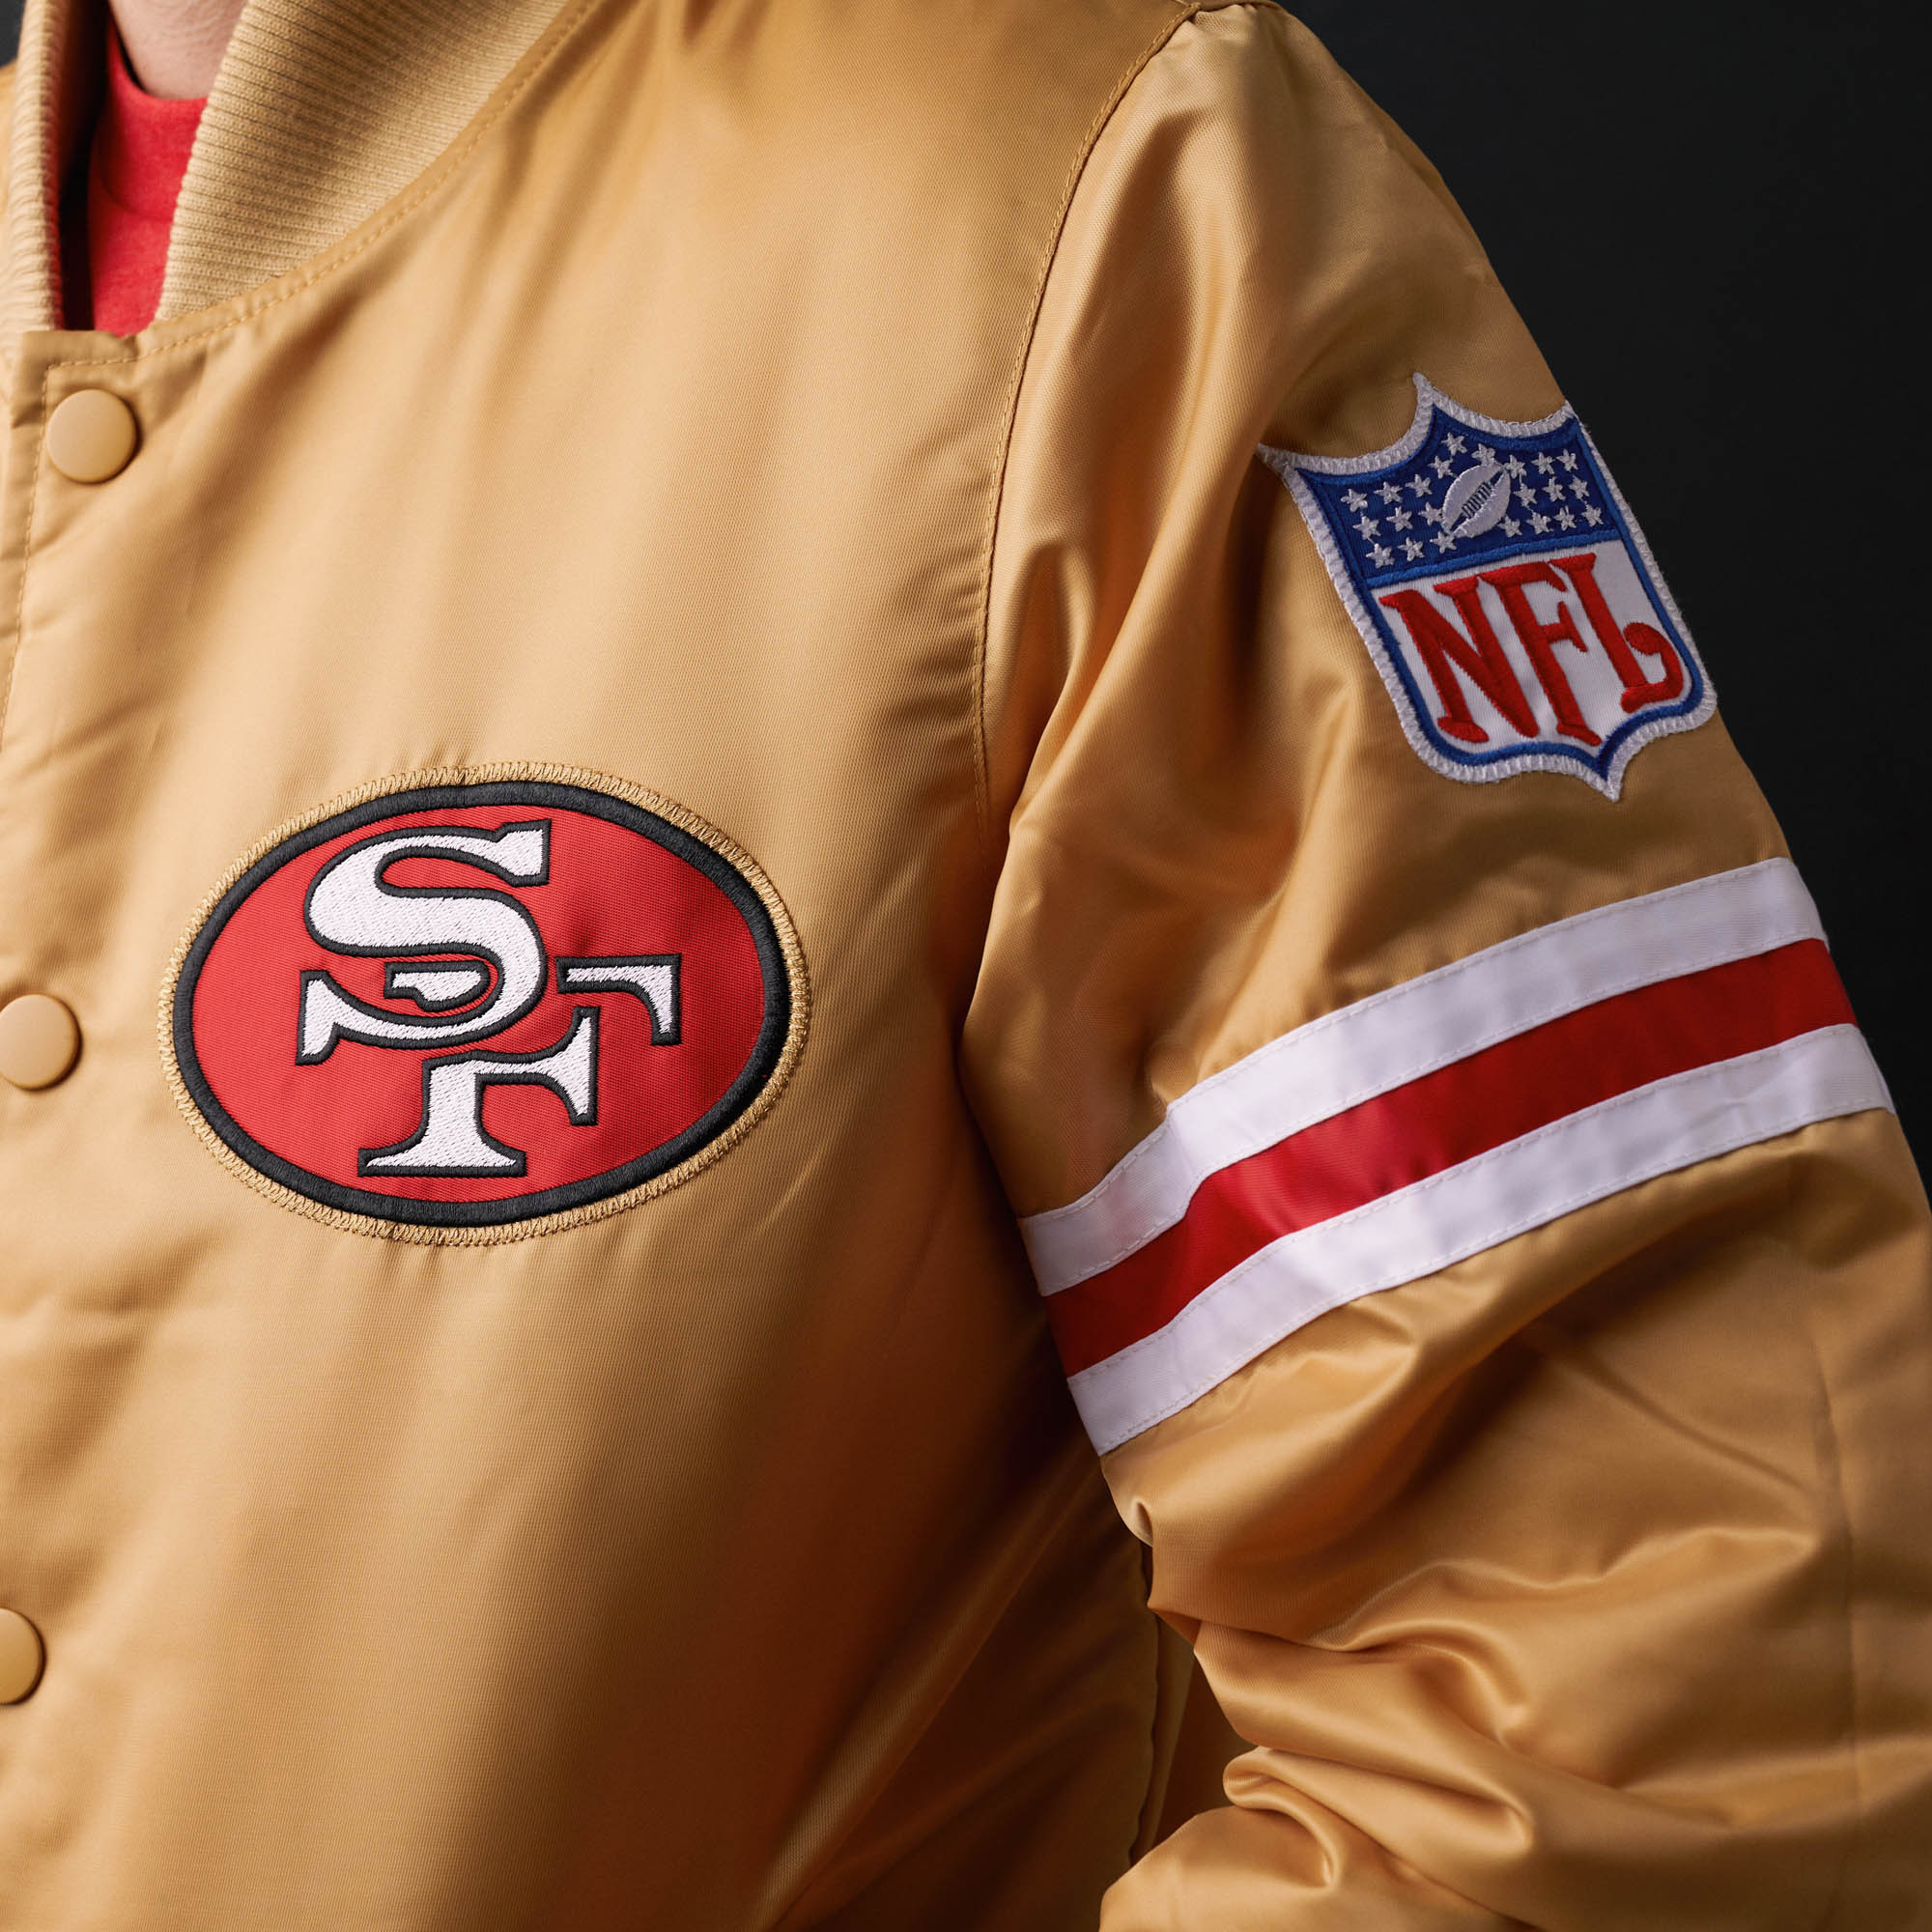 Vintage San Francisco 49ers Starter” Jacket